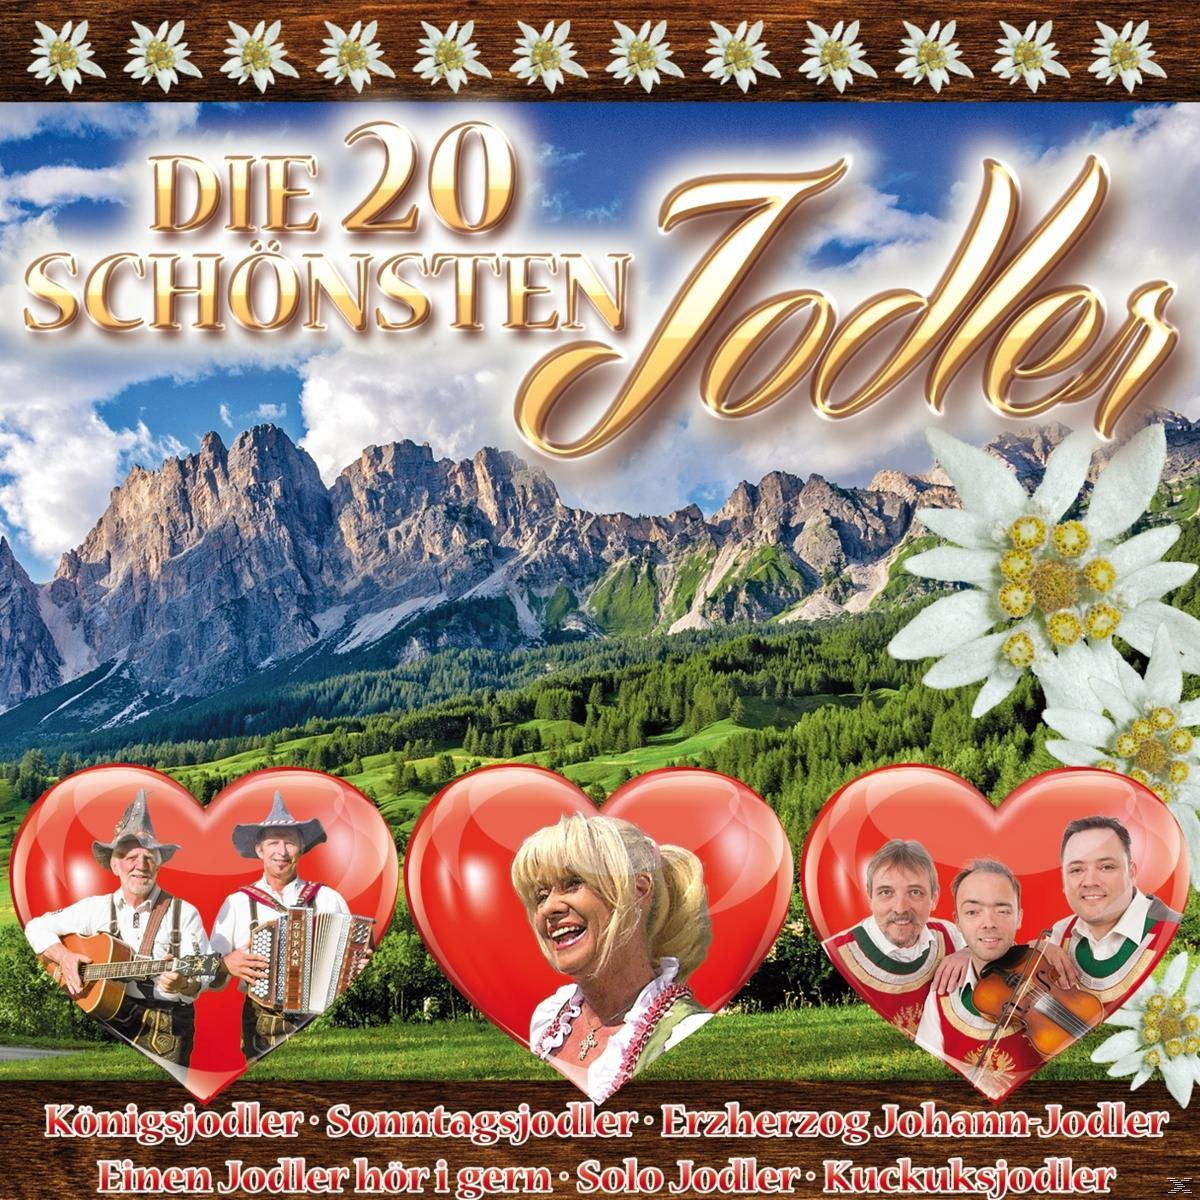 VARIOUS - Die 20 Jodler (CD) schönsten 